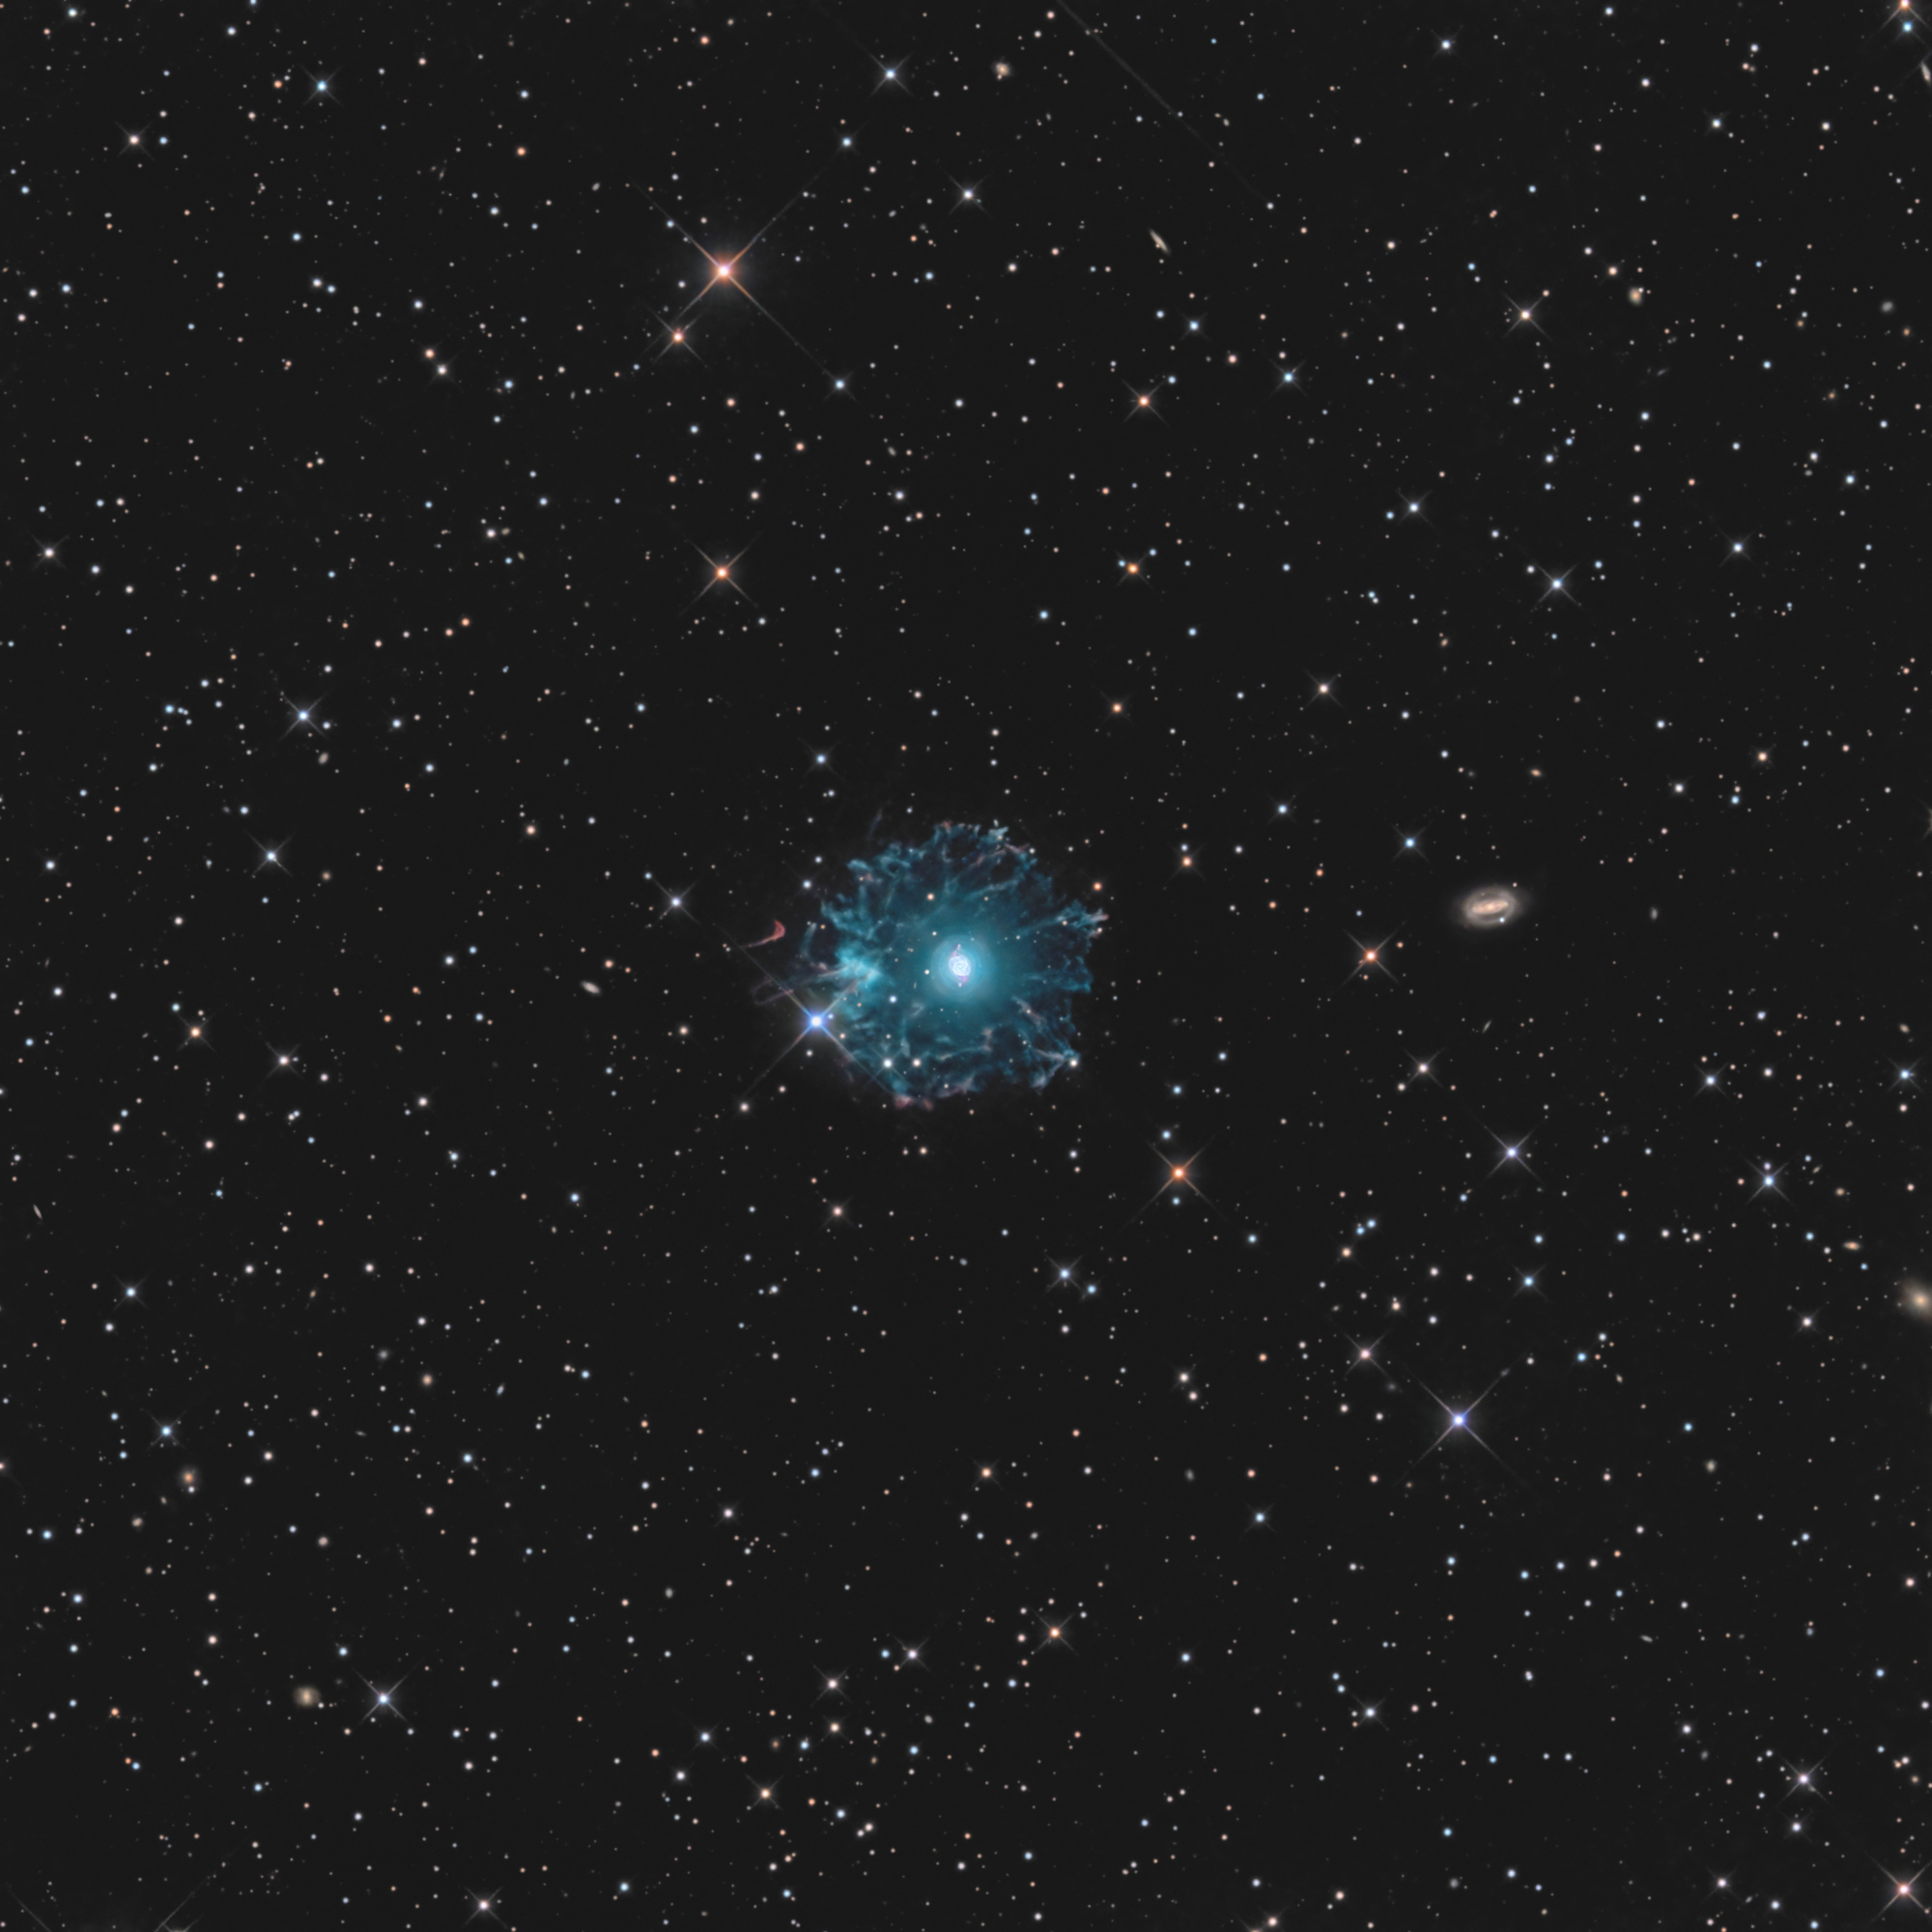 NGC-6543-LRVB-Final.thumb.jpg.c4931e9f1699273c18a2af62d3b461cc.jpg